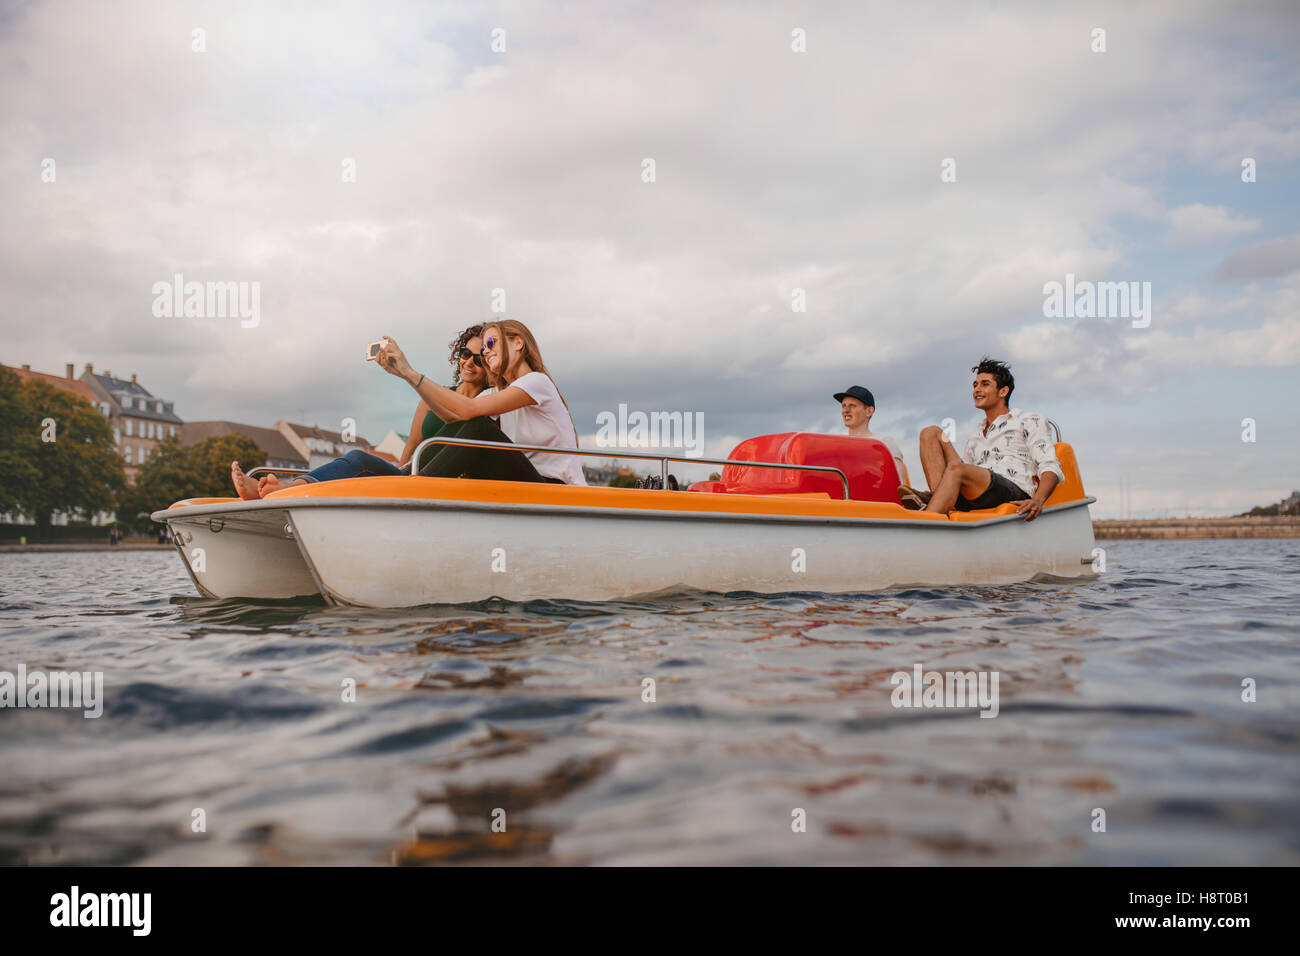 Schuss von jungen Freunden sitzen im Tretboot Urlaub zu genießen. Gruppe von Personen, die in den See nehmen Selfie Bootfahren. Stockfoto